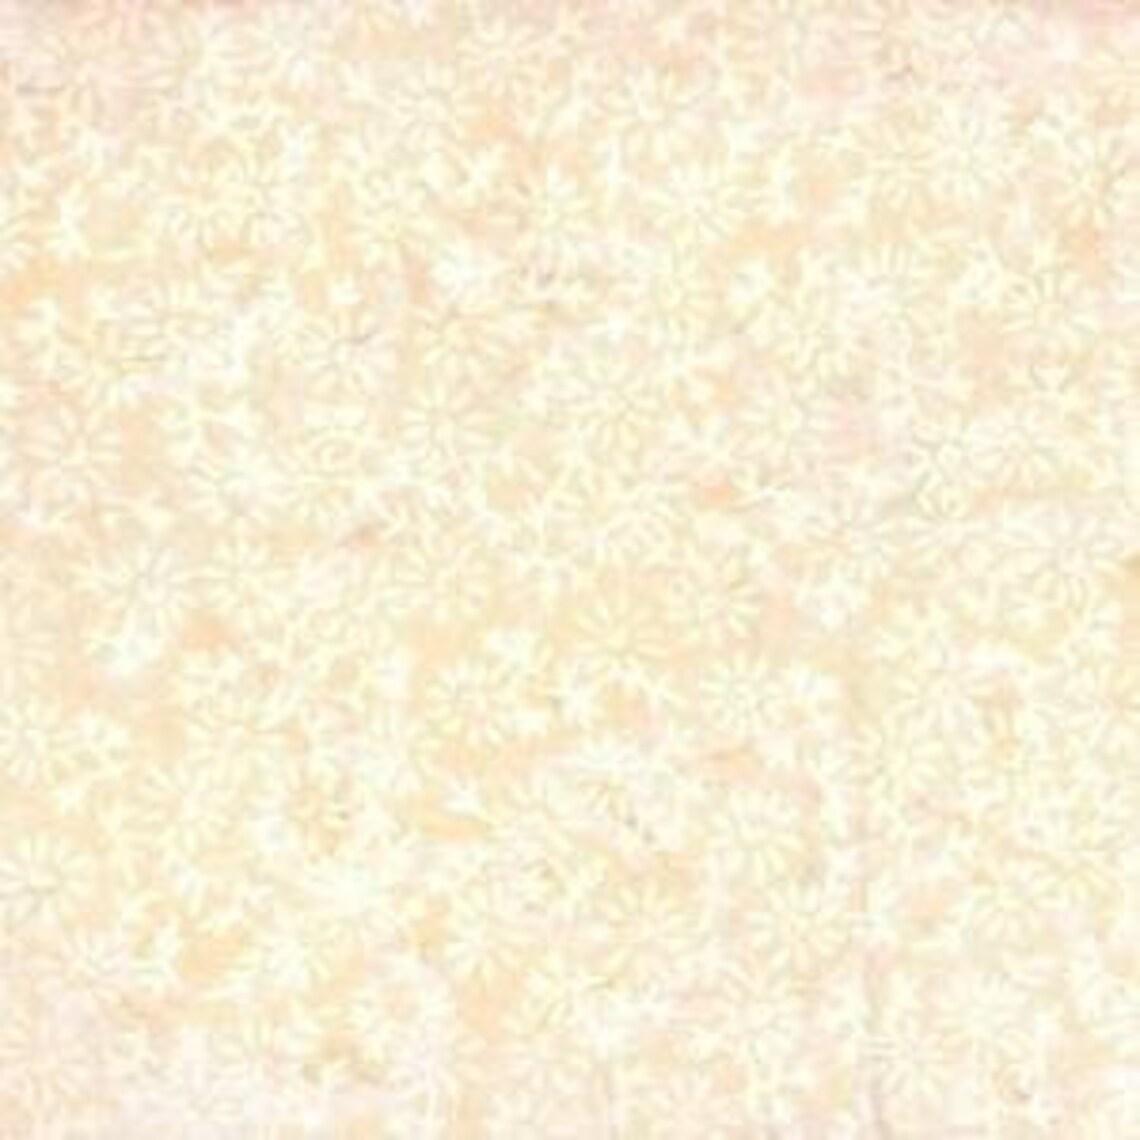 Moonlight - Cream Small Floral Batik - 22267-211